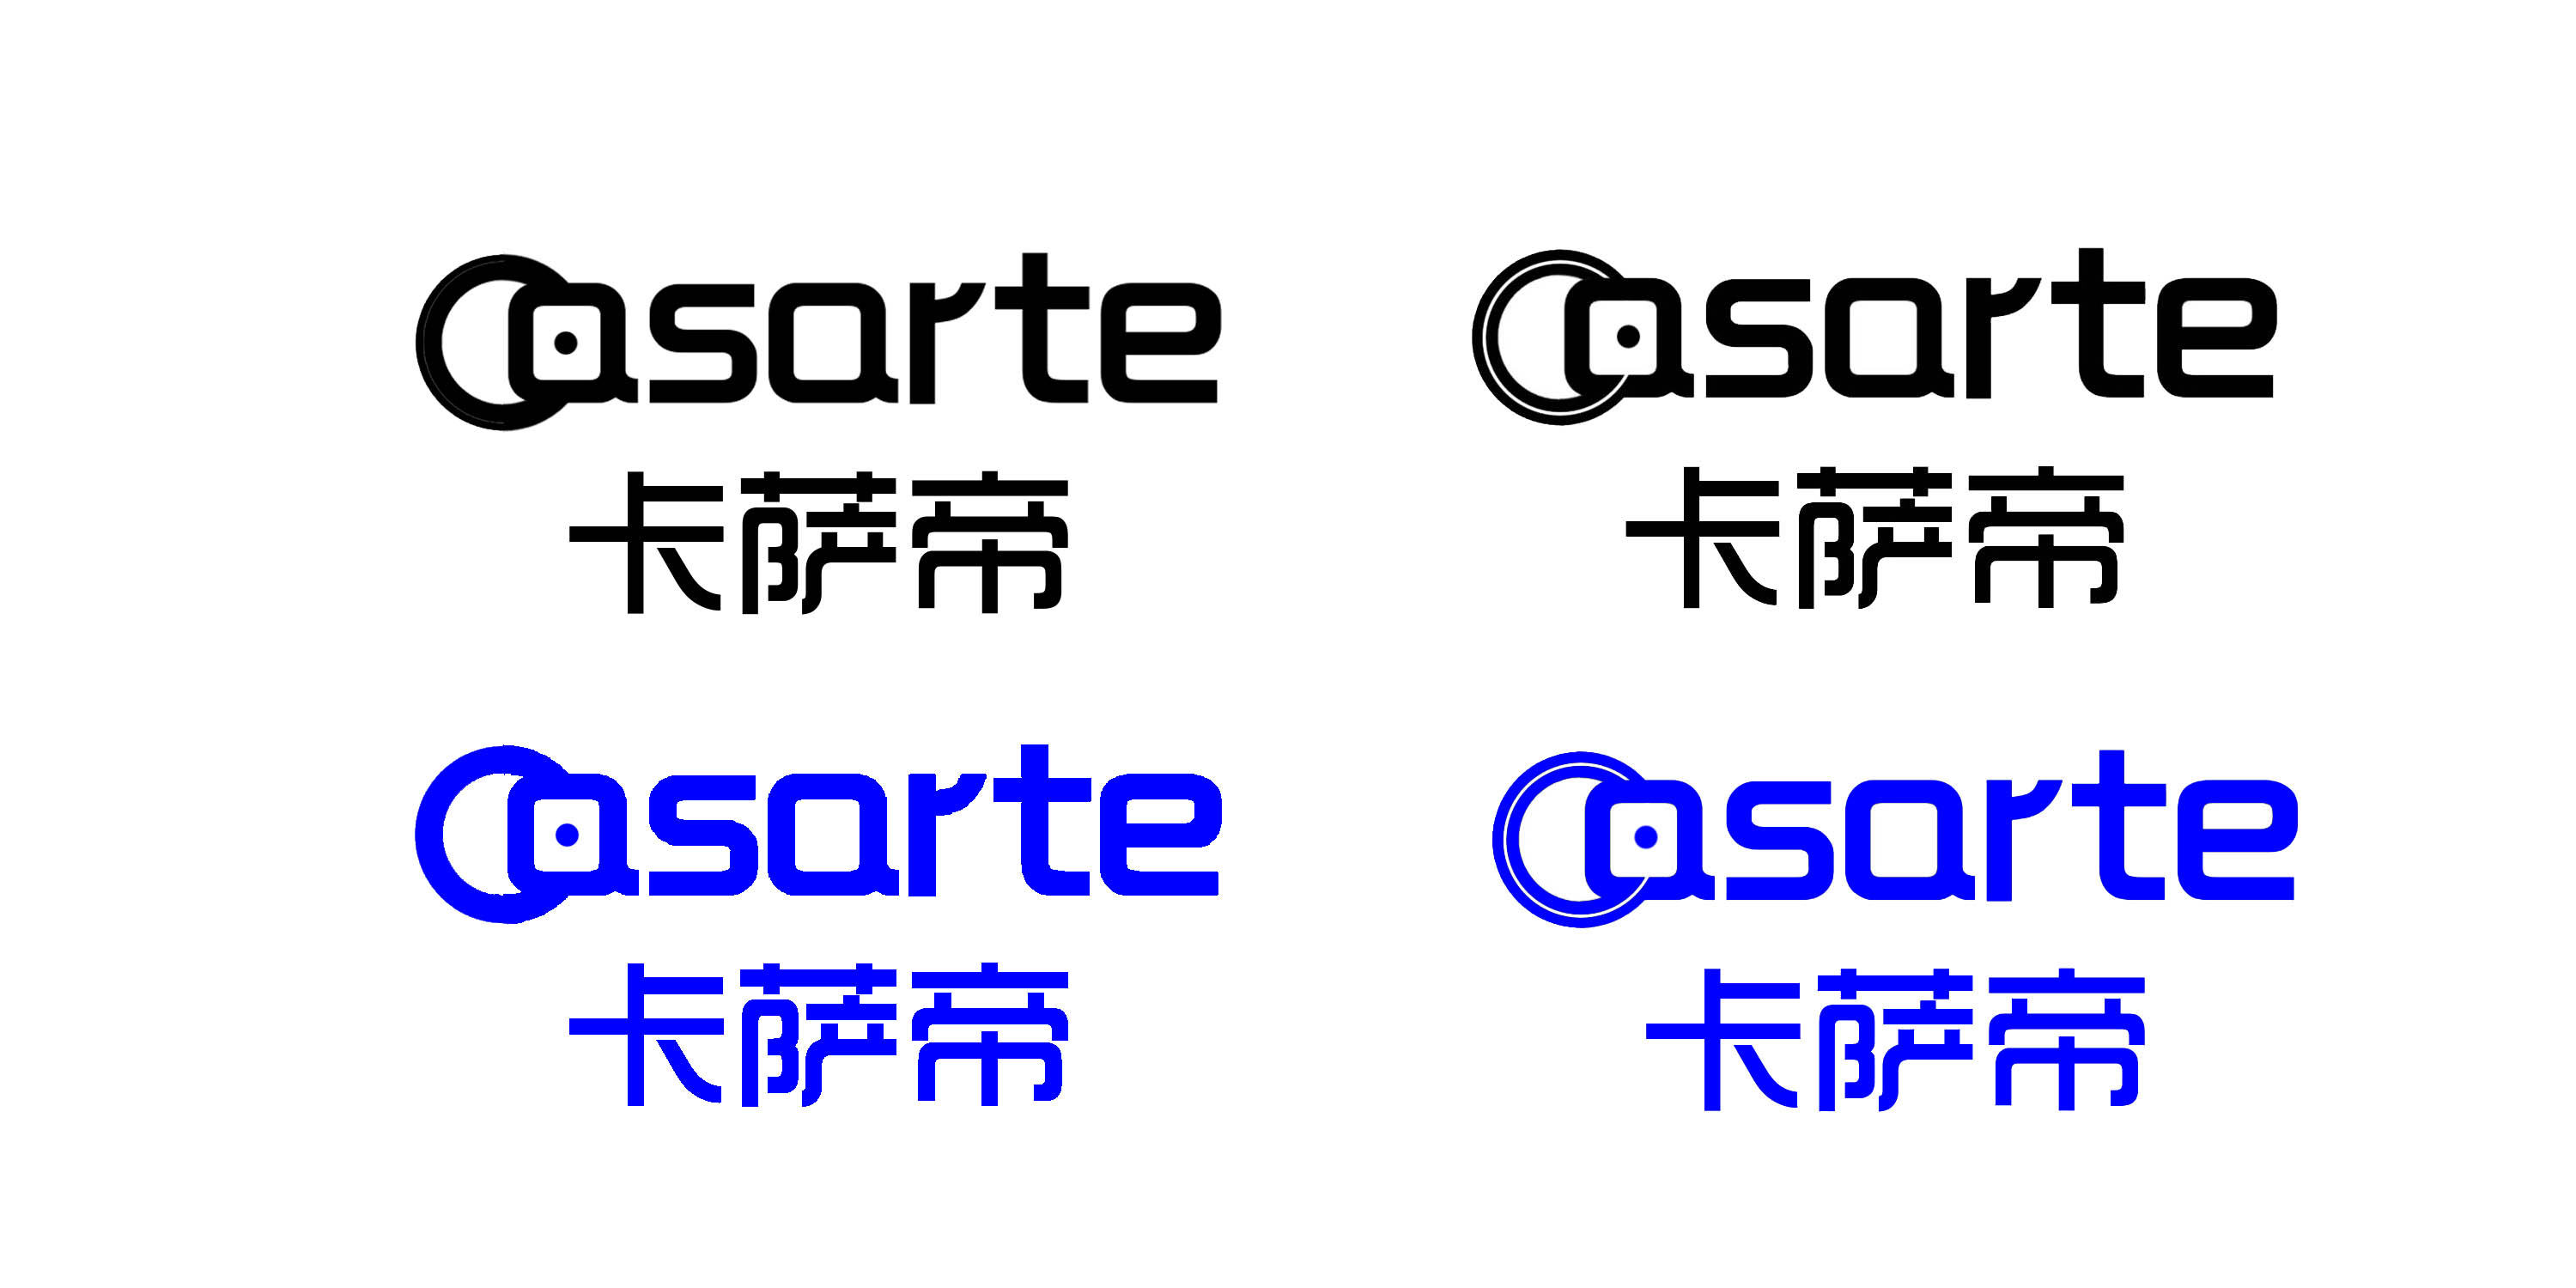 卡萨帝logo 矢量图图片